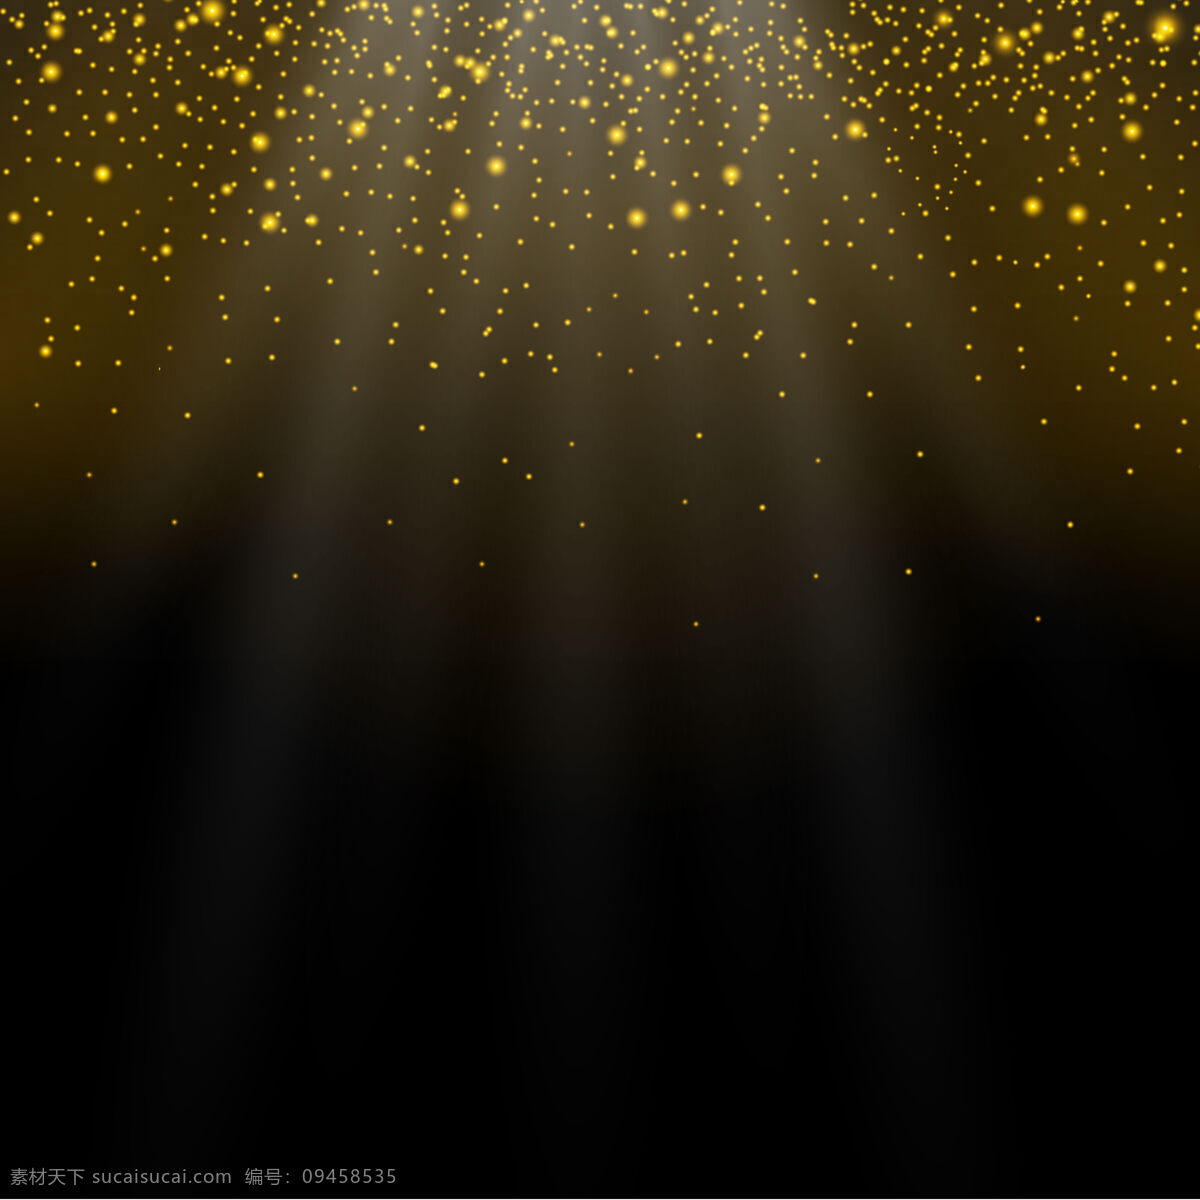 星光光晕素材 星光 光晕 光斑 光纤 灯光 金色闪光 闪光 金色星光 金色光效 光效 星空 夜空 星光素材 星光笔刷 笔刷 星光图库